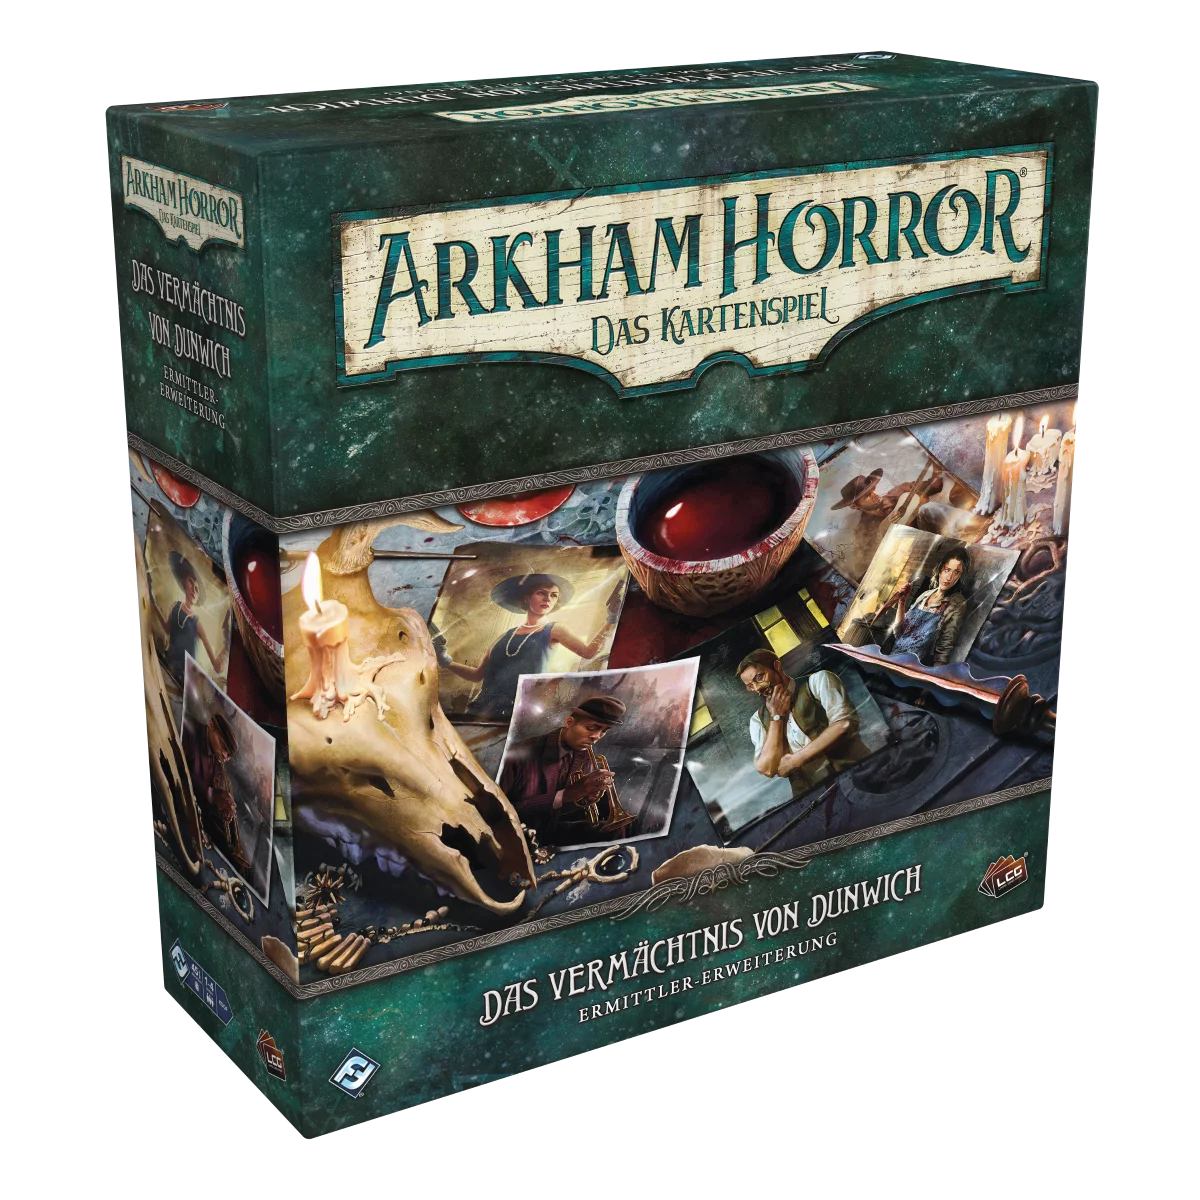 Arkham Horror: Das Kartenspiel - Das Vermächtnis von Dunwich - Ermittler-Erweiterung